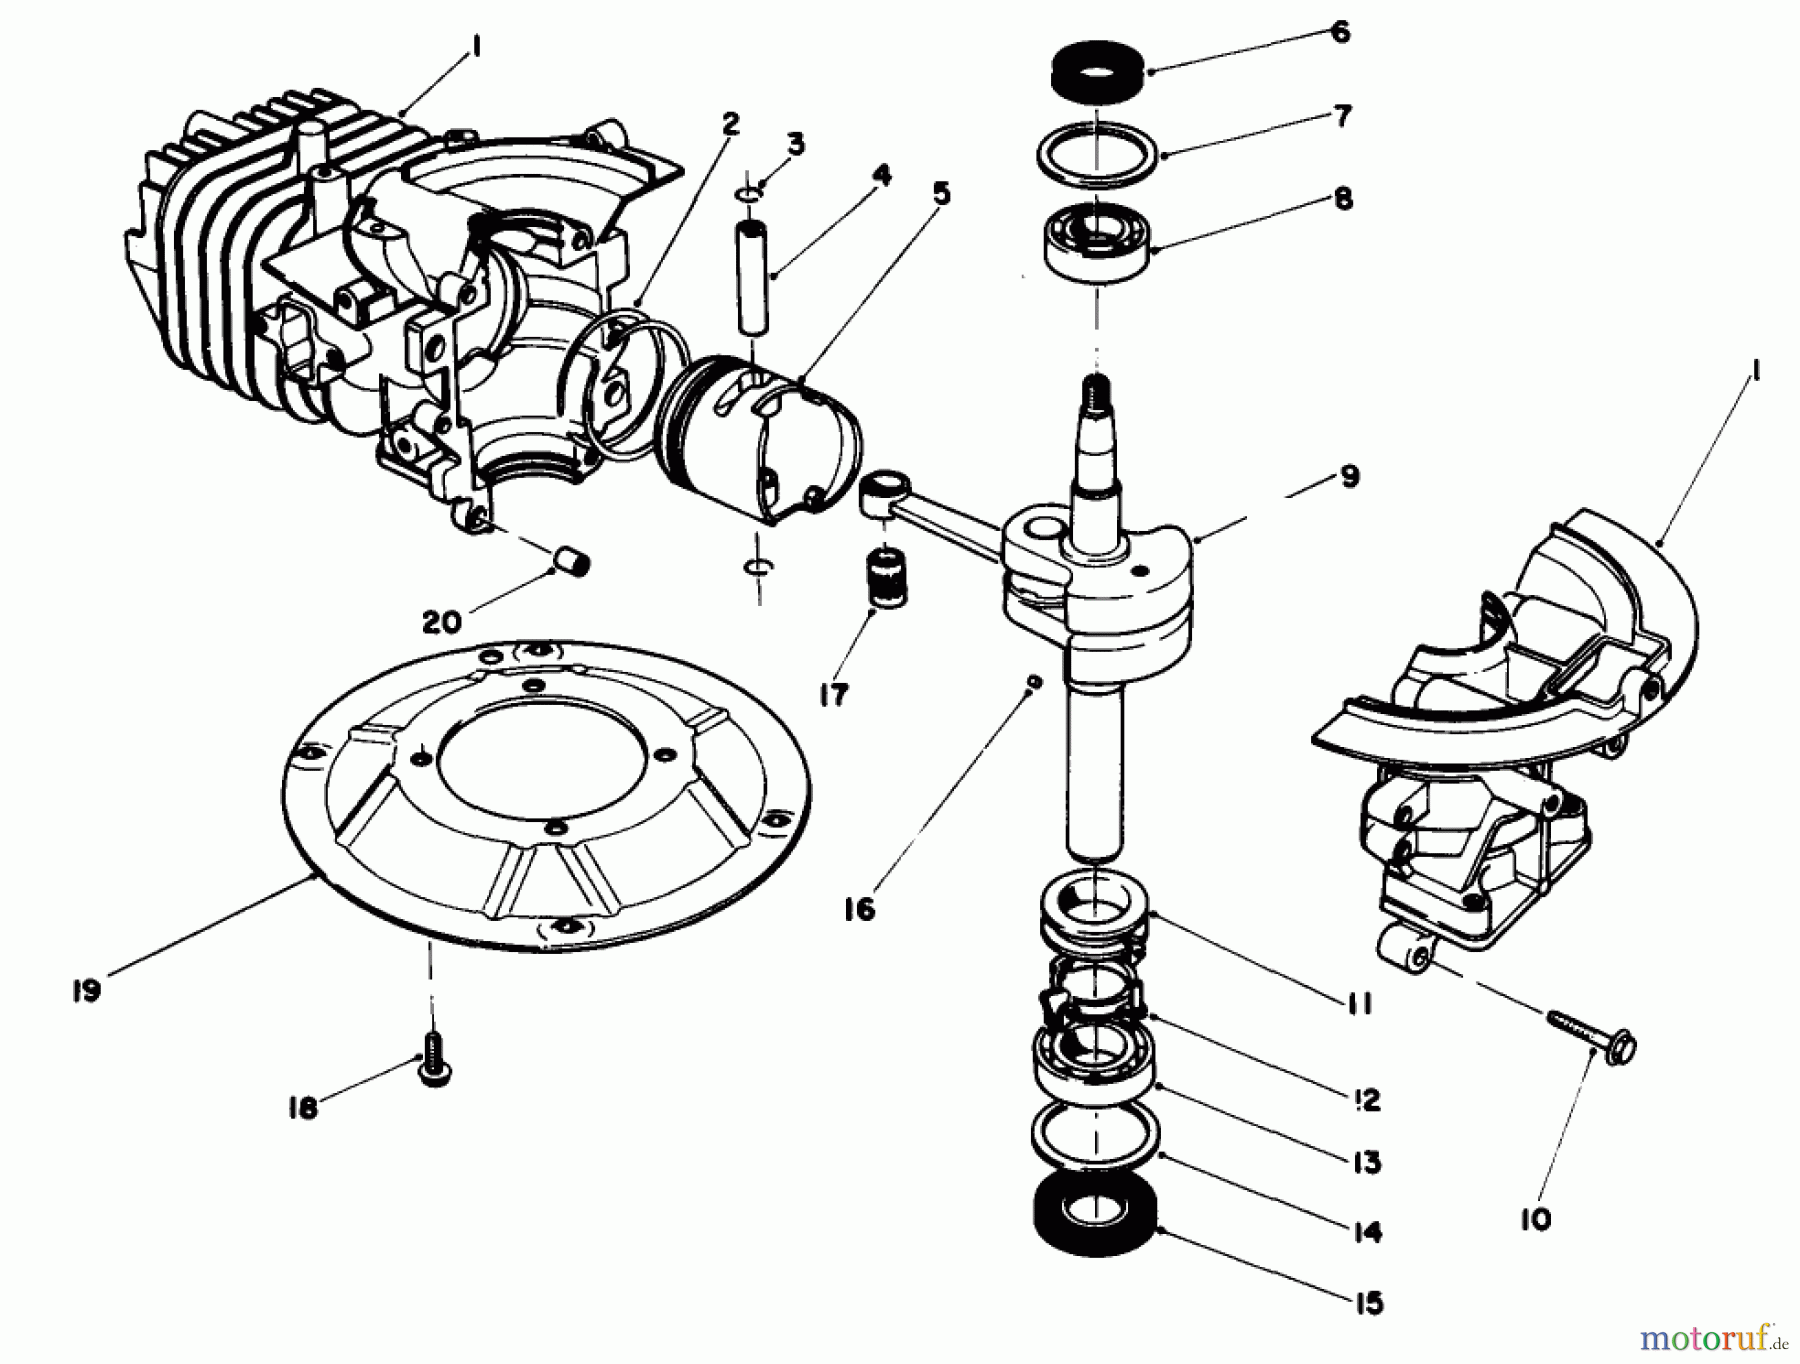  Toro Neu Mowers, Walk-Behind Seite 2 22030 - Toro Lawnmower, 1989 (9000001-9999999) ENGINE ASSEMBLY MODEL NO. 47PH7 #1